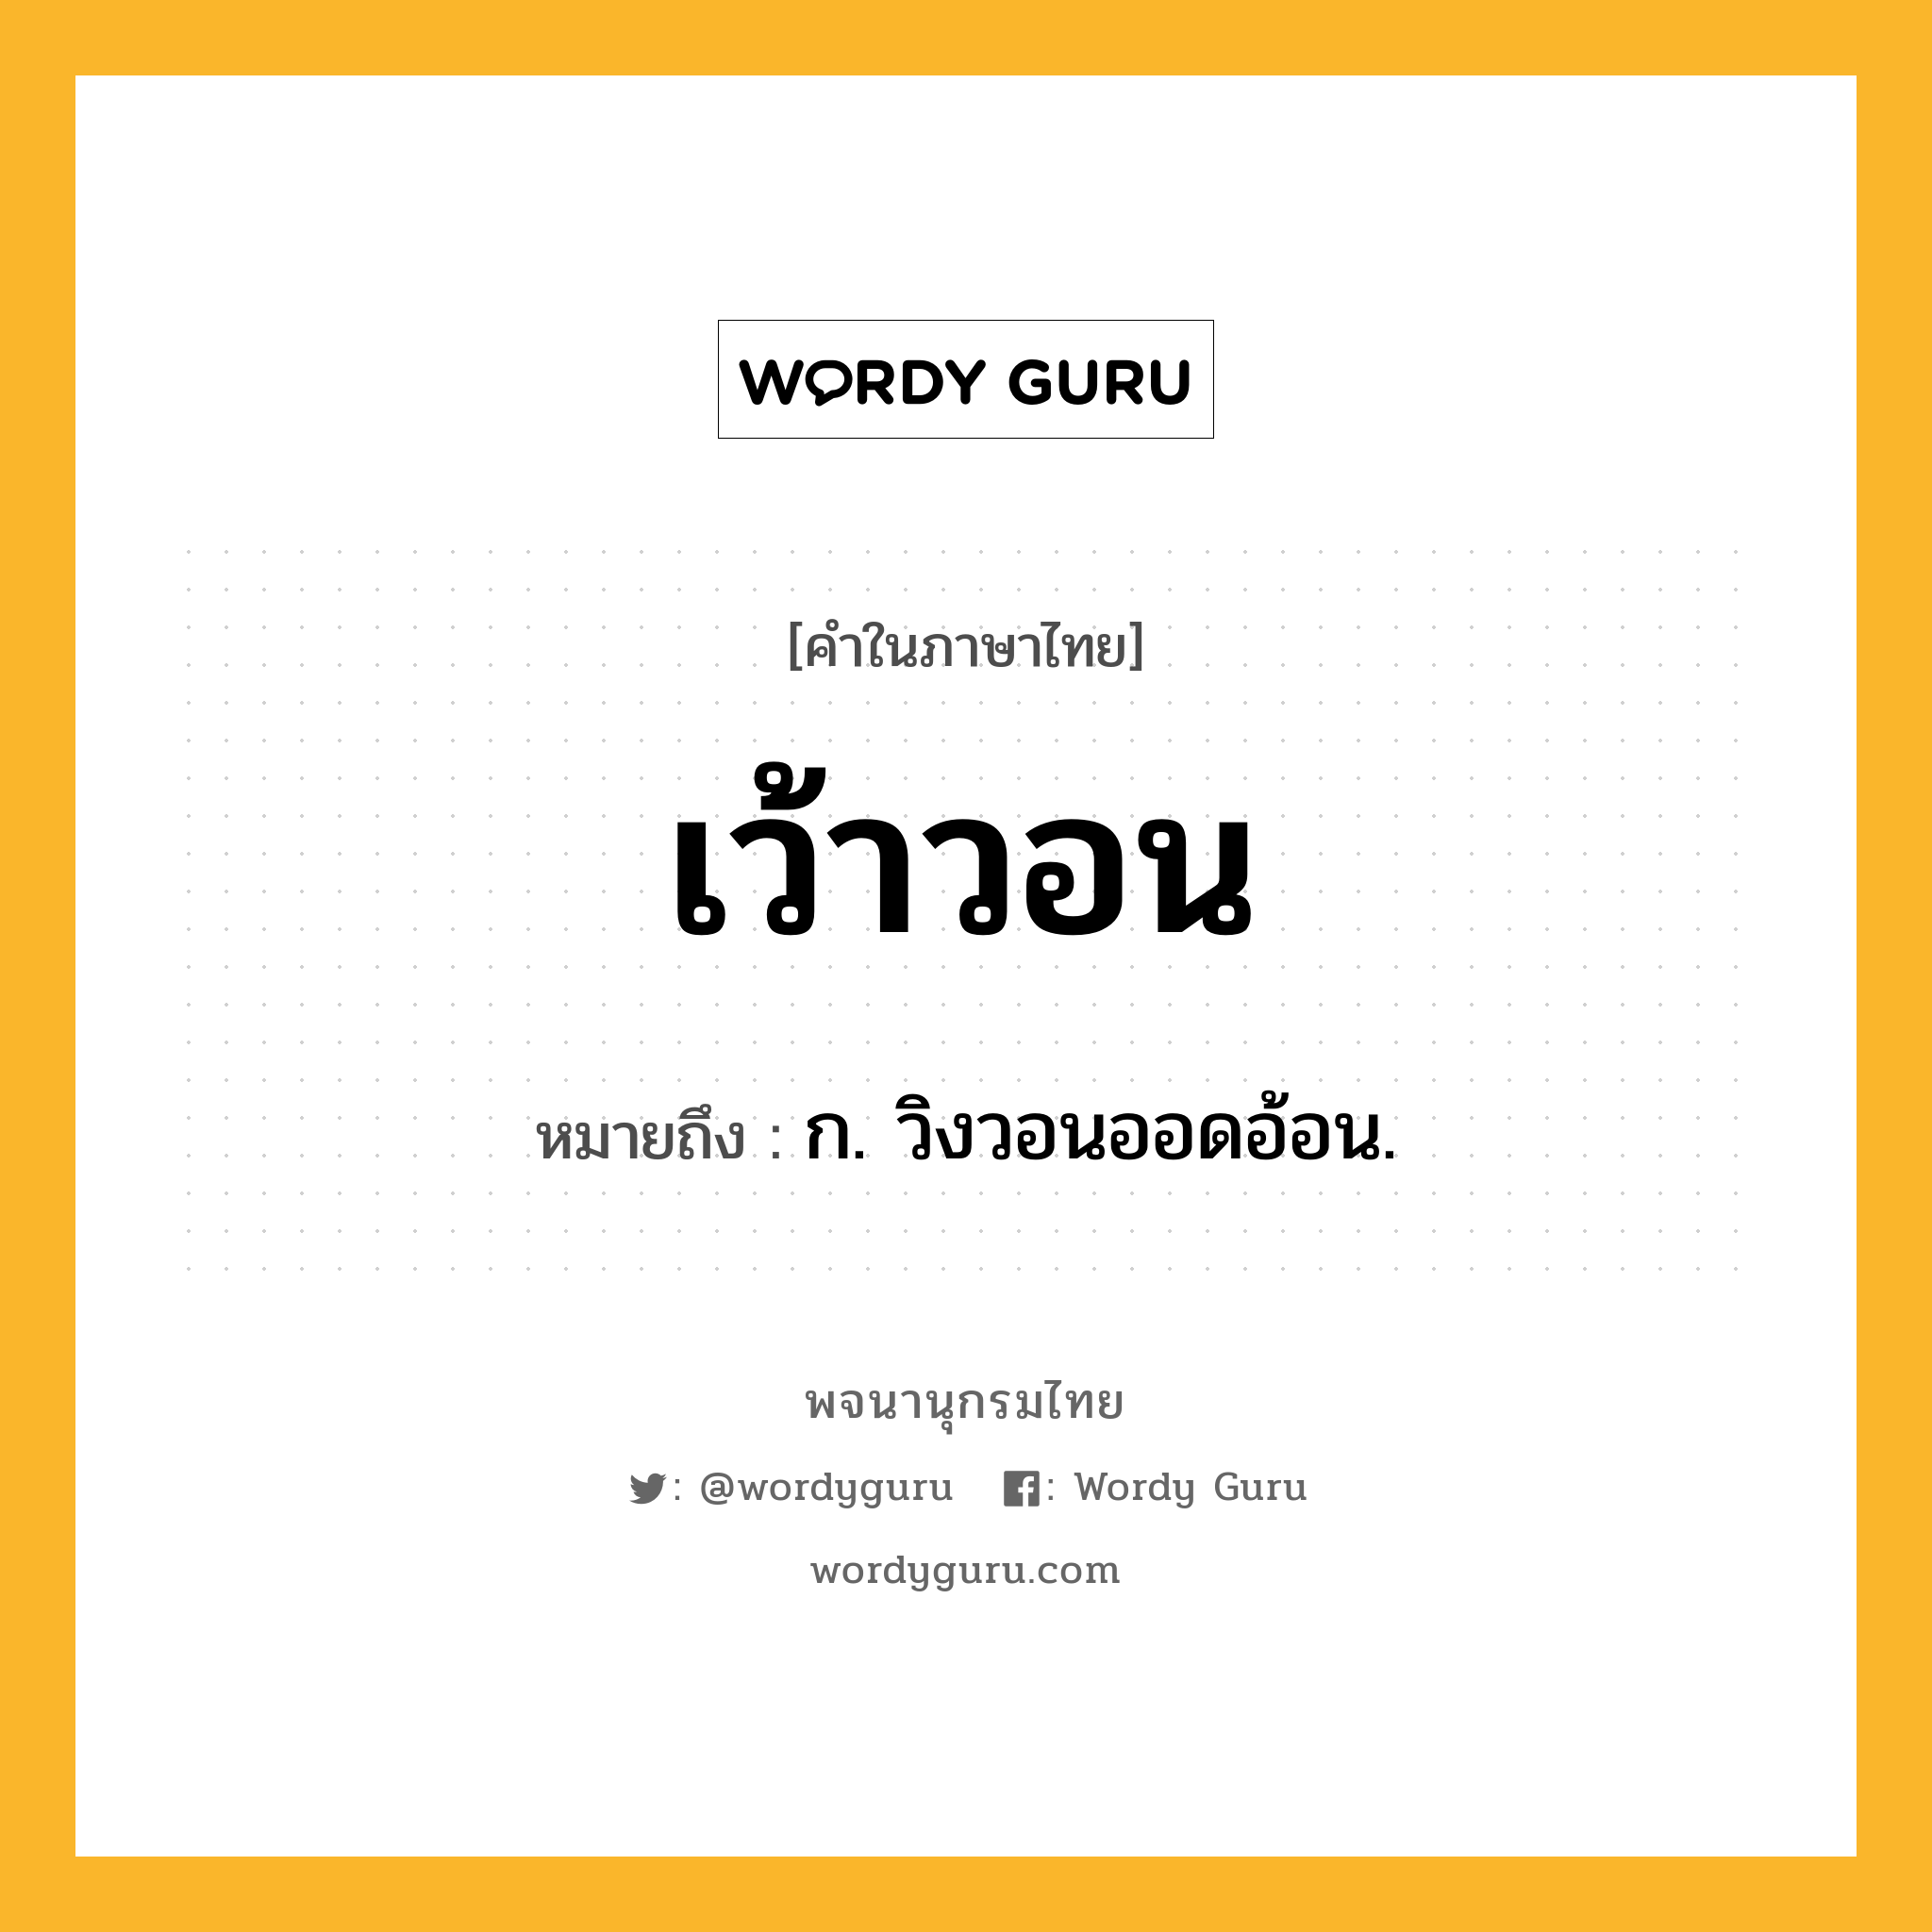 เว้าวอน หมายถึงอะไร?, คำในภาษาไทย เว้าวอน หมายถึง ก. วิงวอนออดอ้อน.